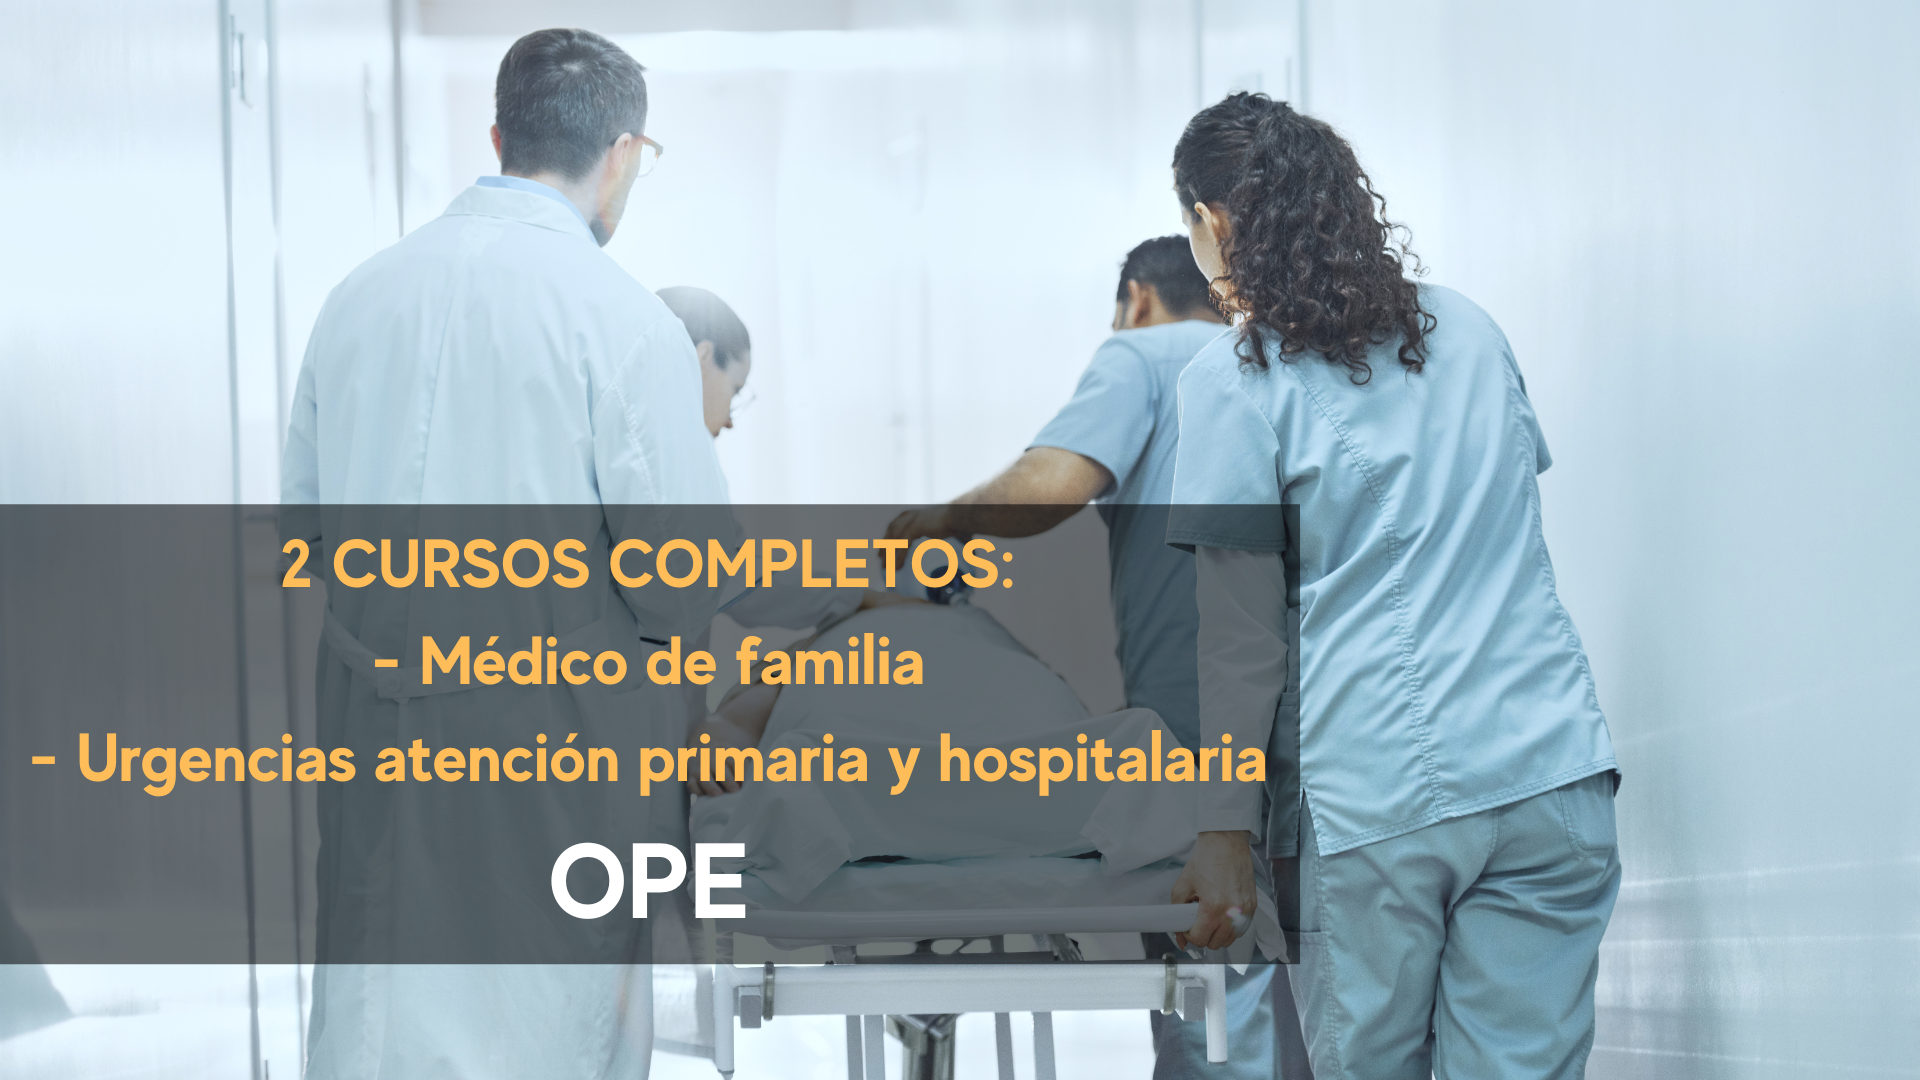 2 CURSOS COMPLETOS DE MÉDICO DE FAMILIA Y URGENCIAS ATENCIÓN PRIMARIA Y HOSPITALARIA